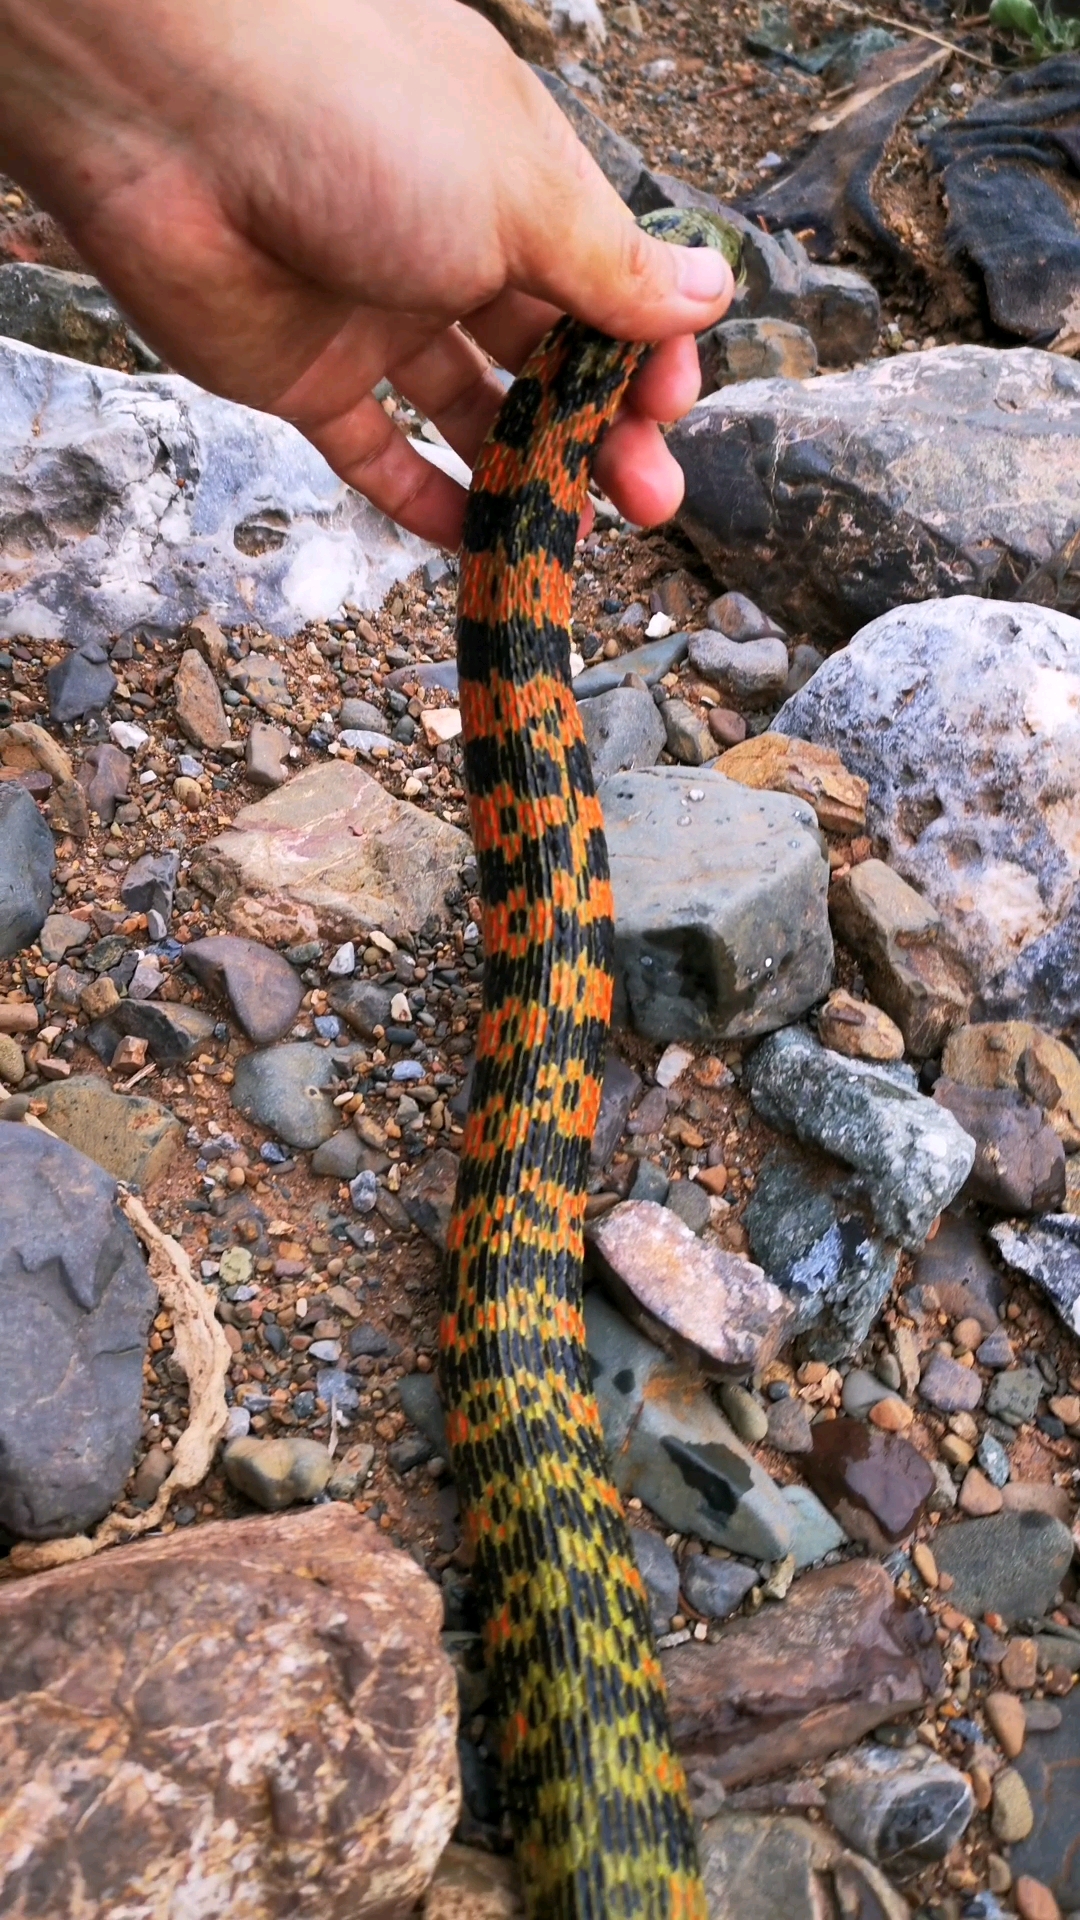 虎斑颈槽蛇,野生保护动物,了解一下,放归自然!